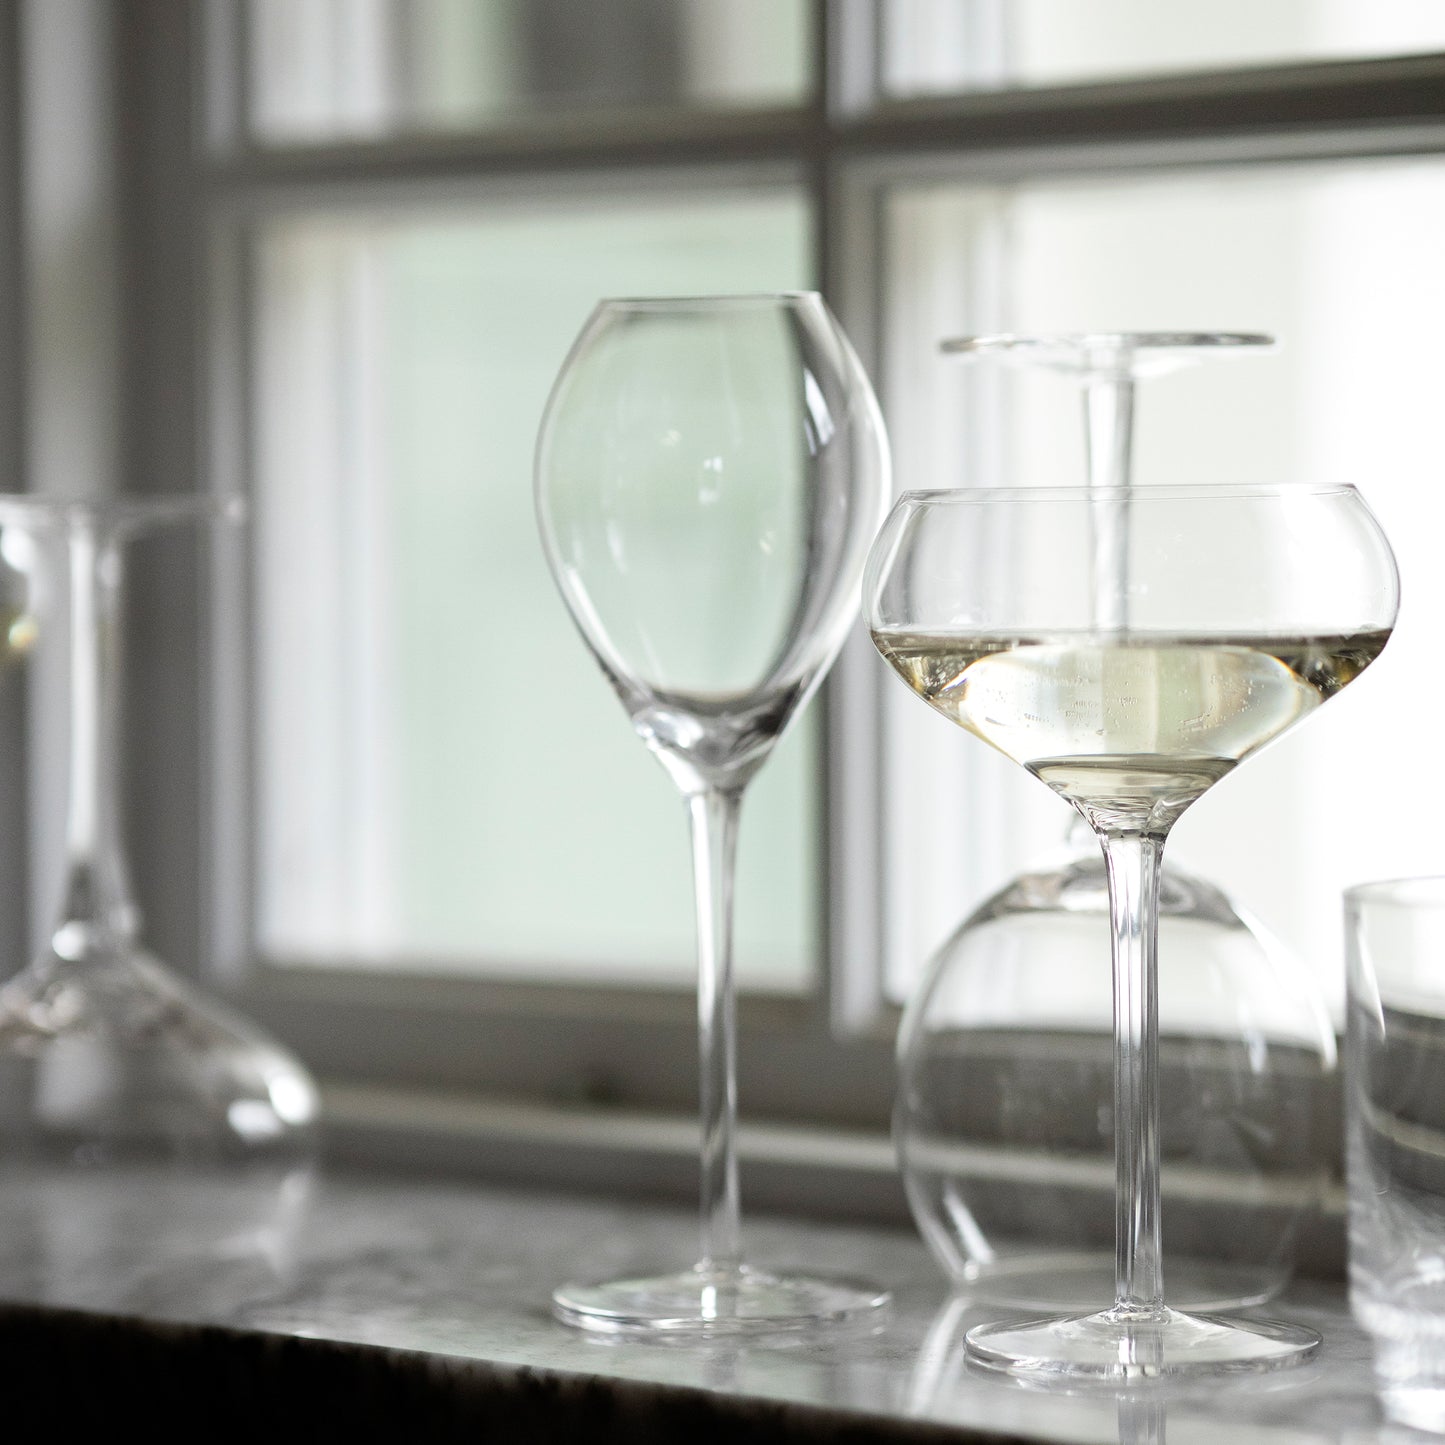 Sagaform Wine Glasses, Set of 2  Widgeteer Inc.   5018263 0004 5018263 5018264 5018265 5018268